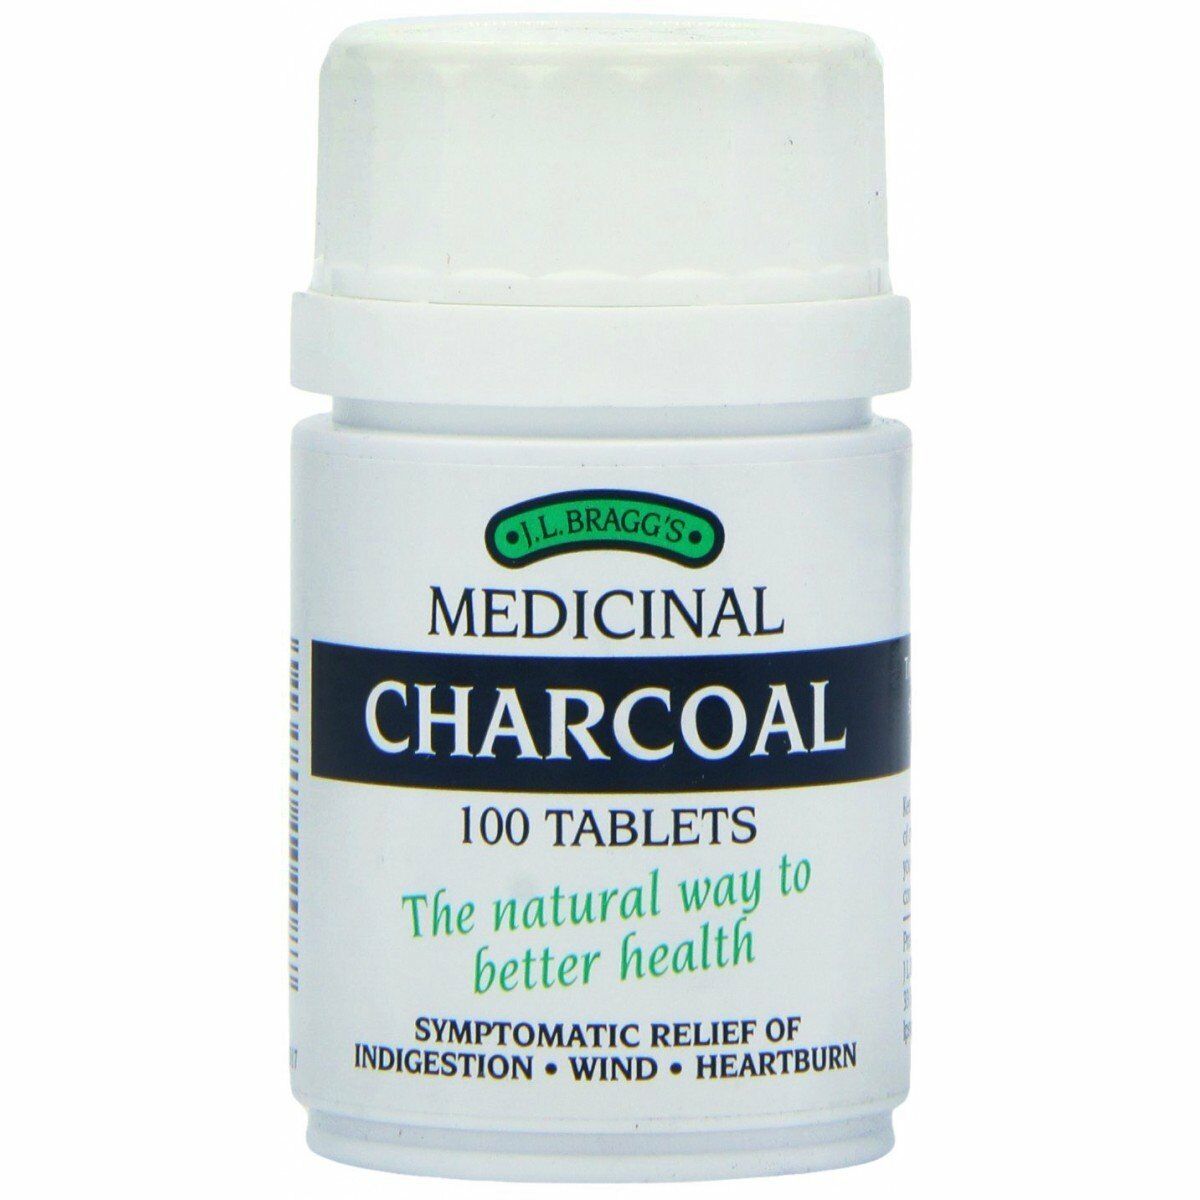 J.L. Bragg's Medicinal Charcoal 100 Tablets